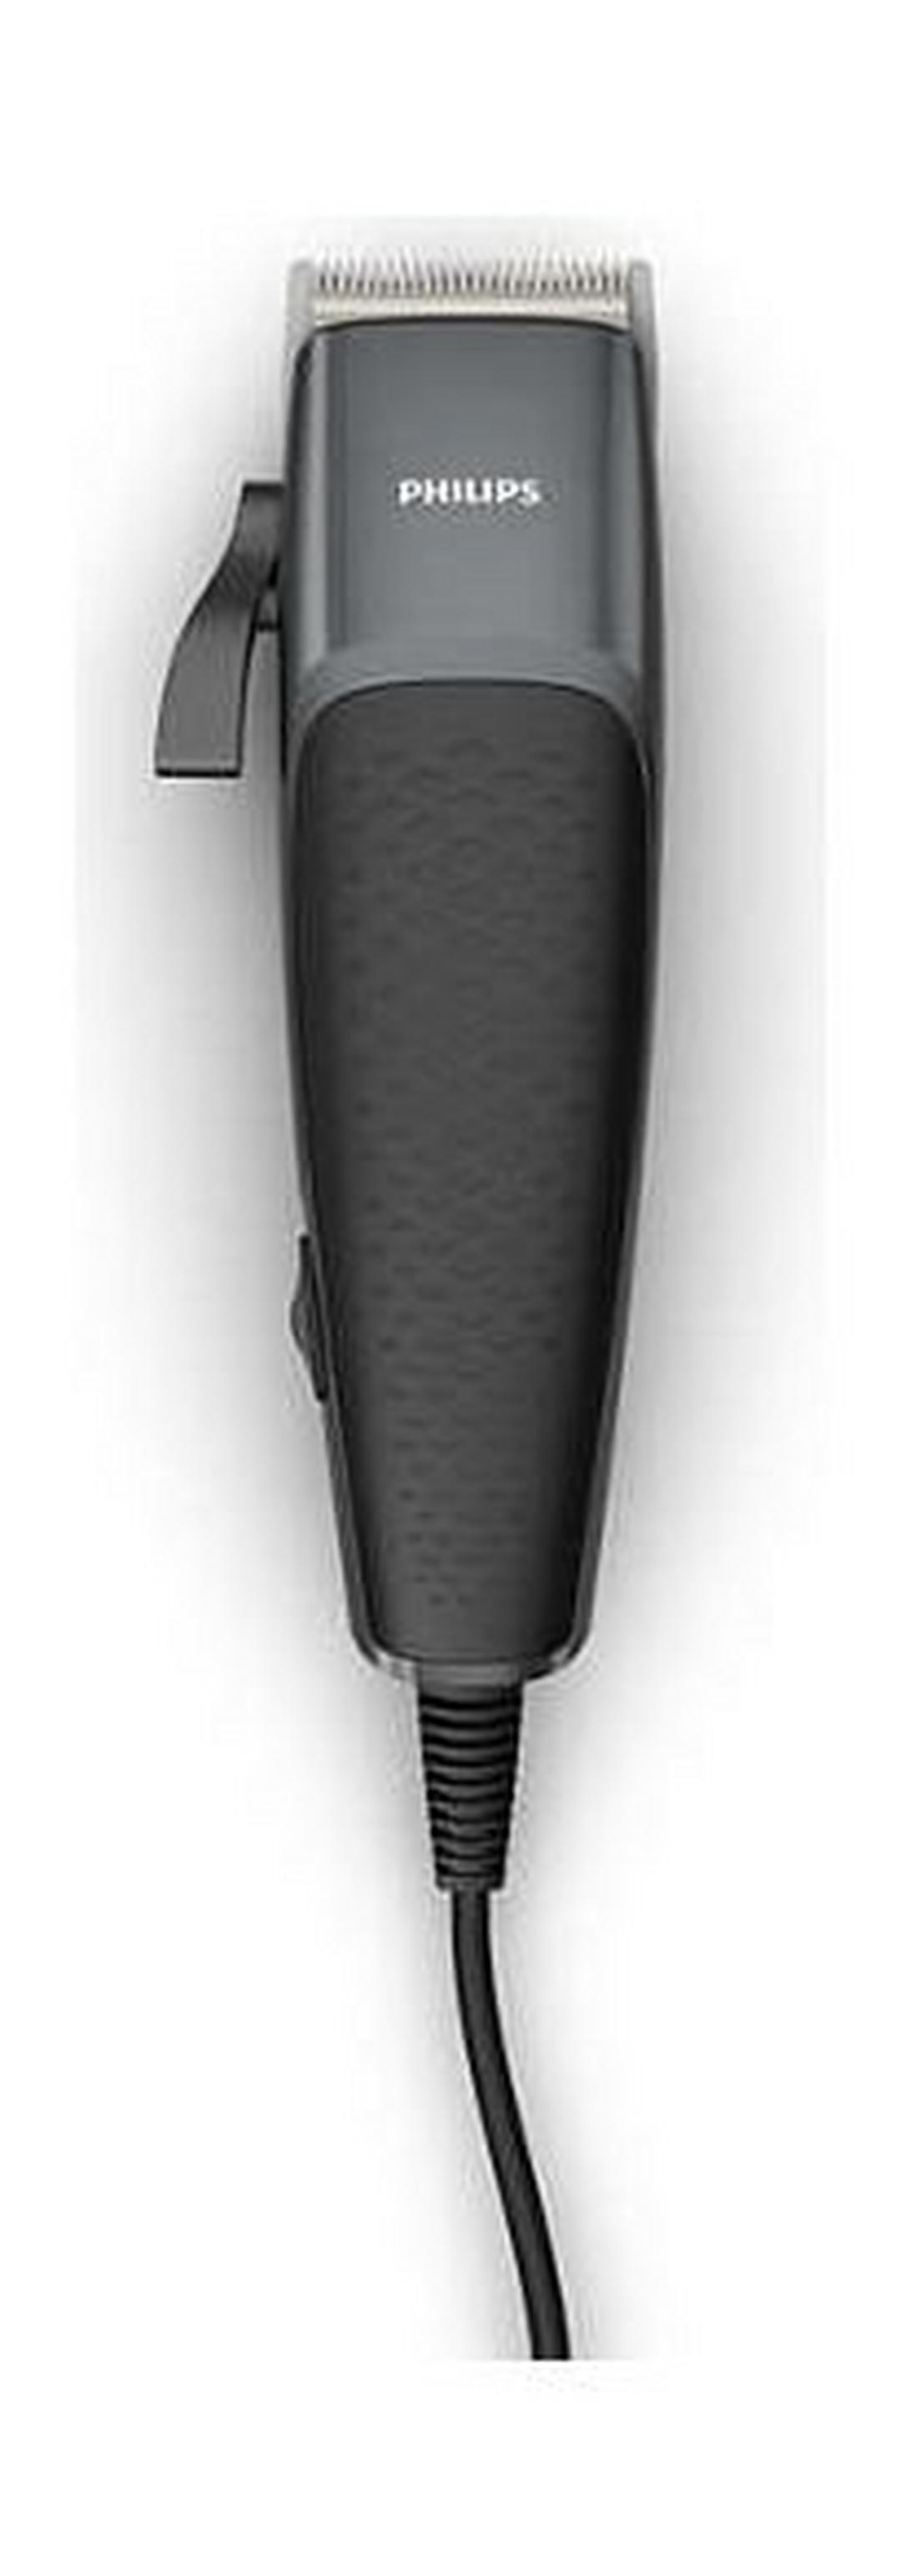 ماكينة قص الشعر فيليبس من سلسلة ٣٠٠٠ – أسود (HC3100/13)